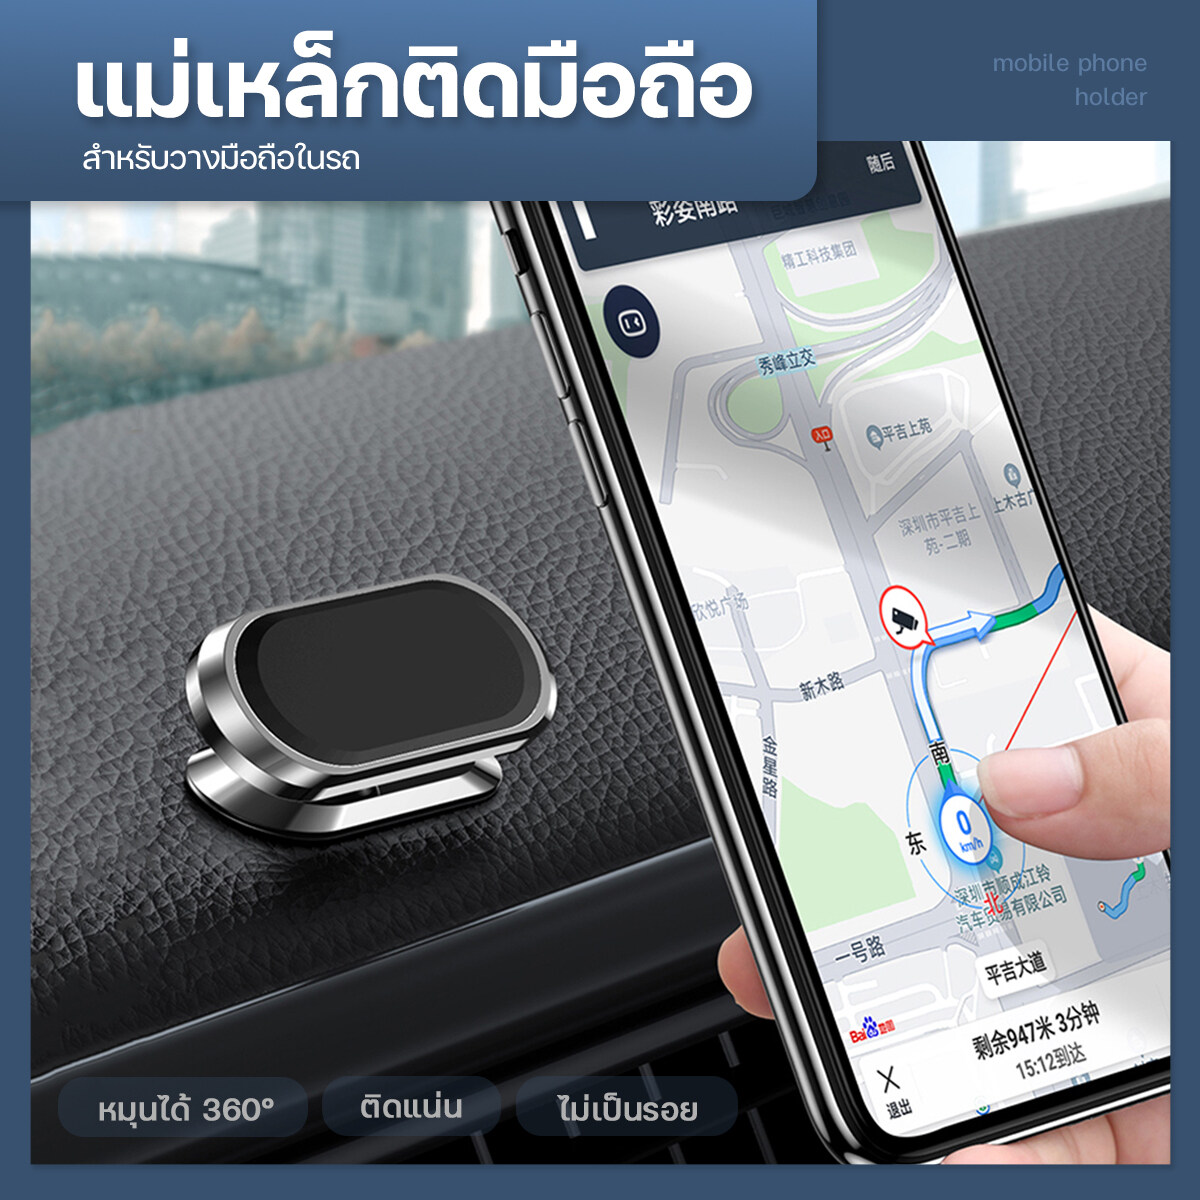 ที่วางโทรศัพท์รถยนต์ แม่เหล็กติดมือถือ Mini Strip ที่วางมือถือ ที่ยึดมือถือ ที่วางโทรศัพท์ในรถยนต์ มือถือและอุปกรณ์เสริม#B7